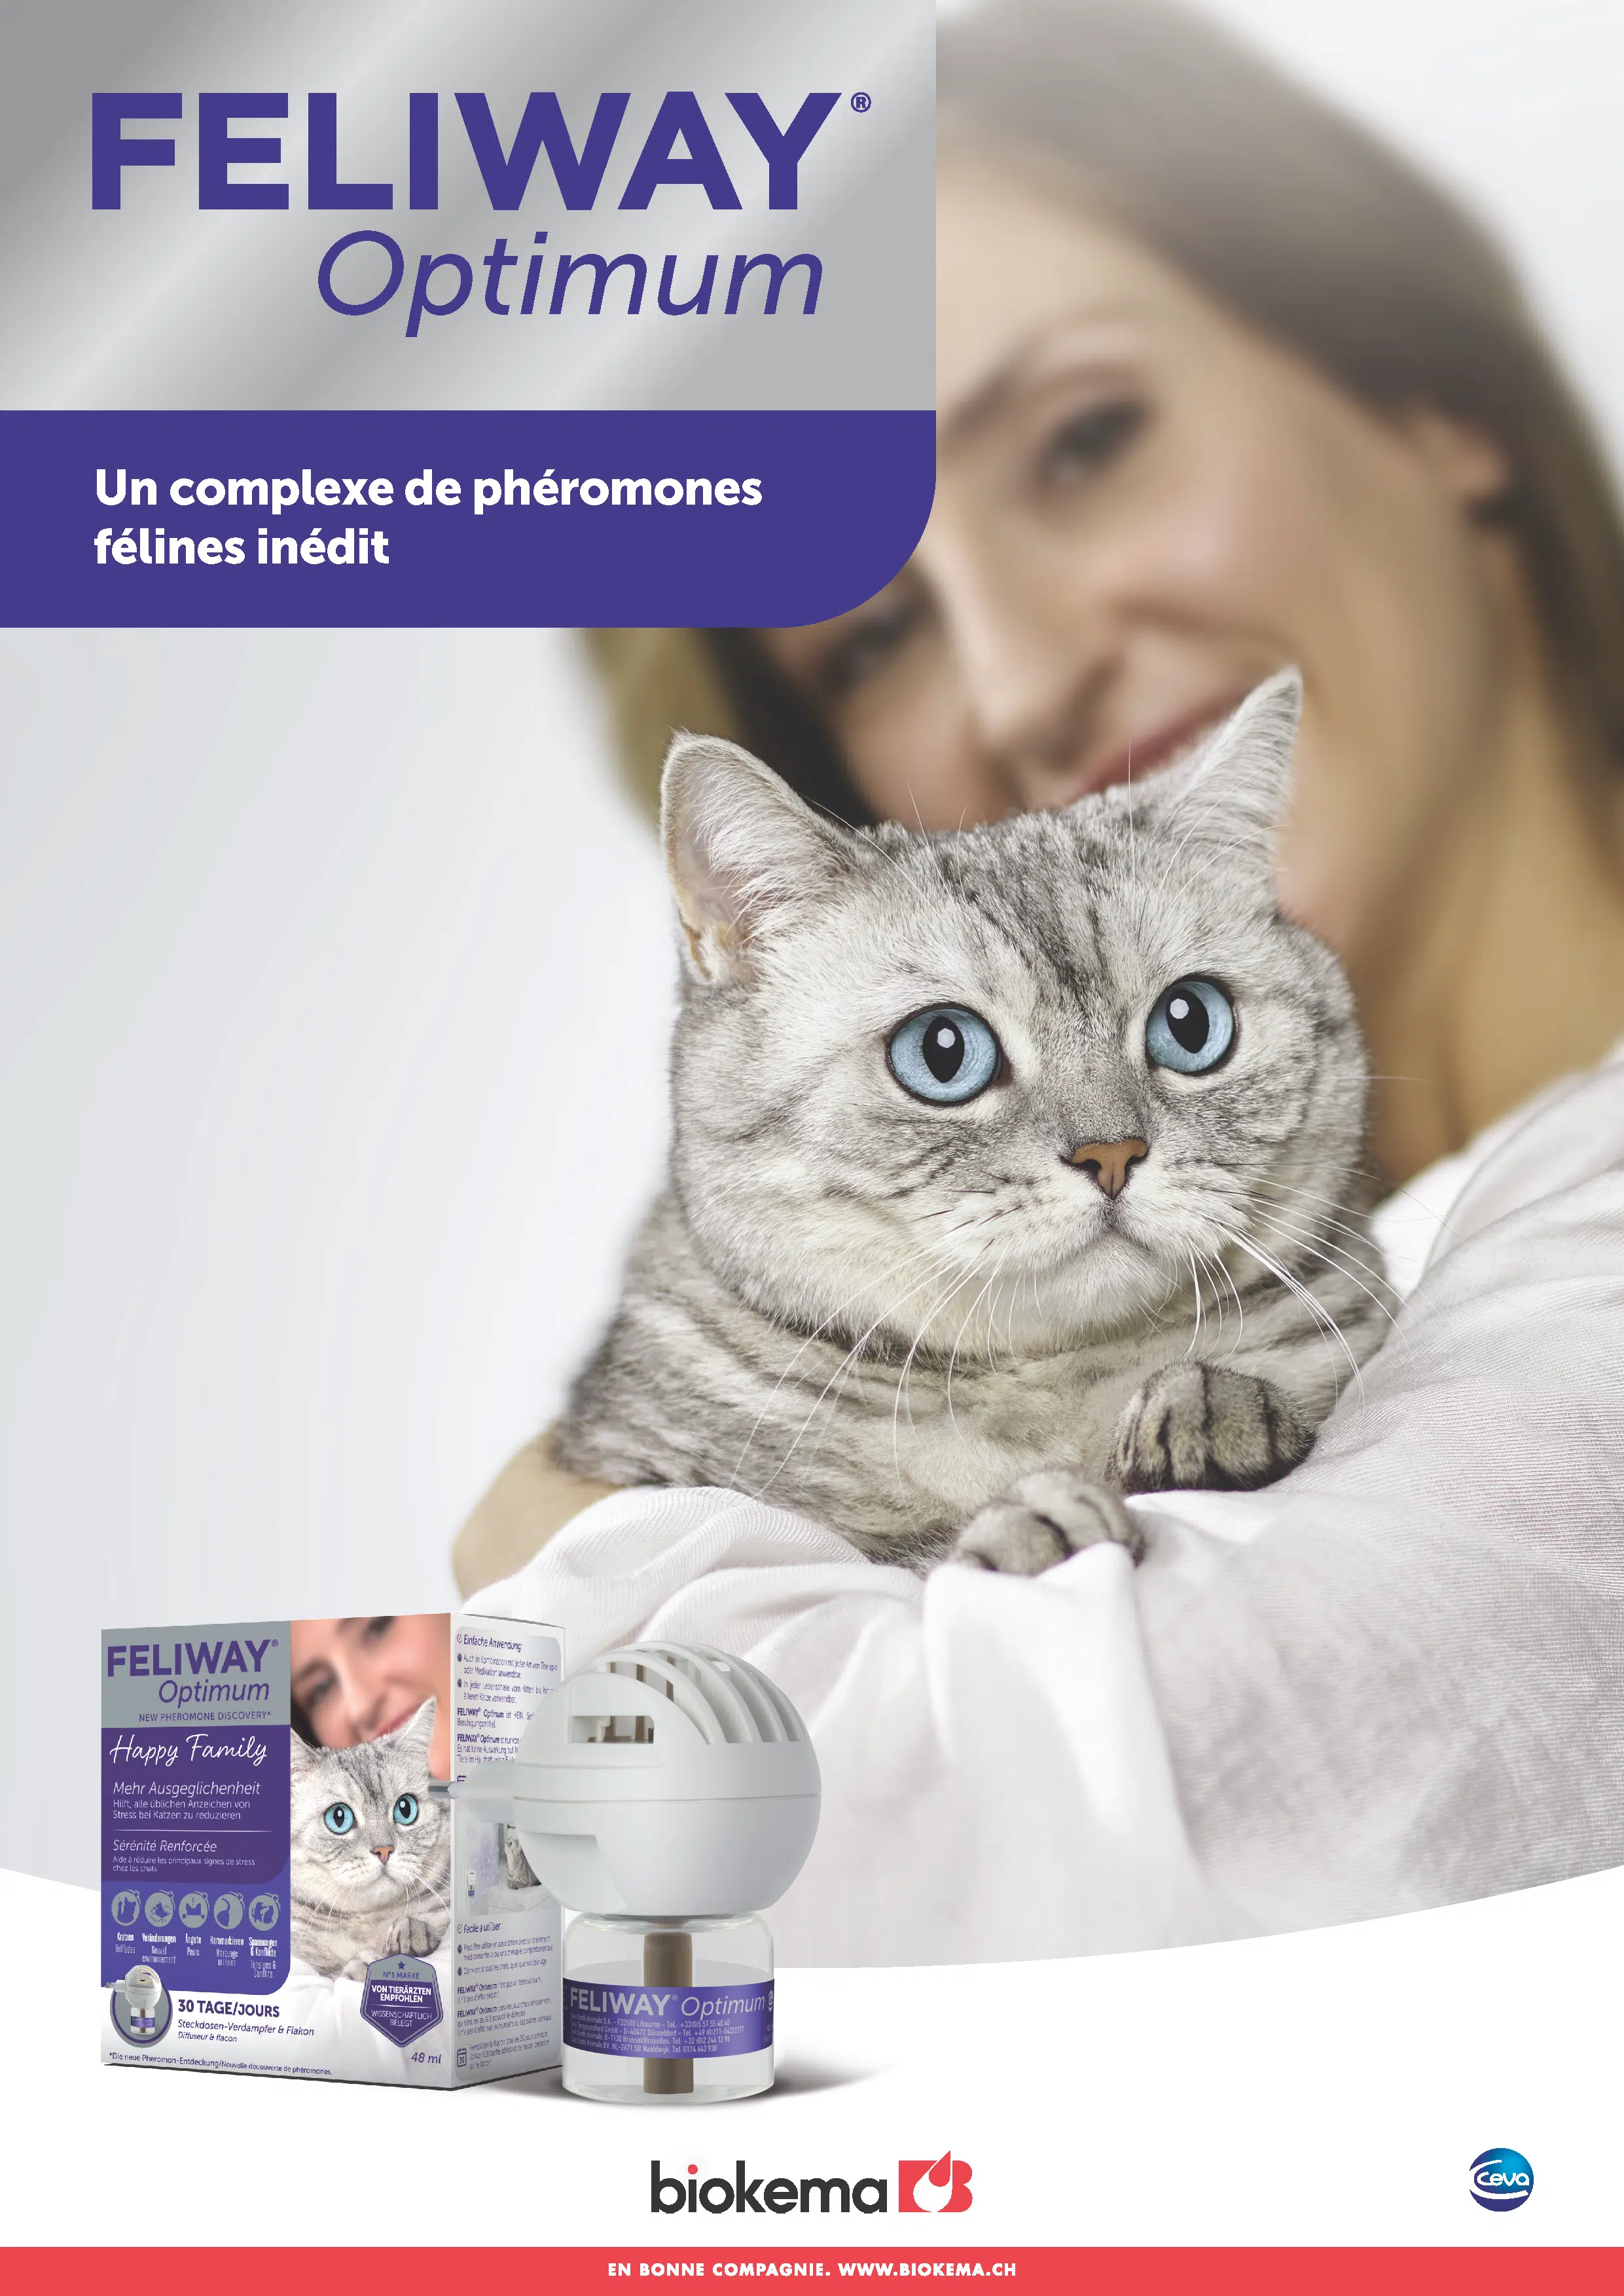 Les phéromones du chat / Produits / Feliway